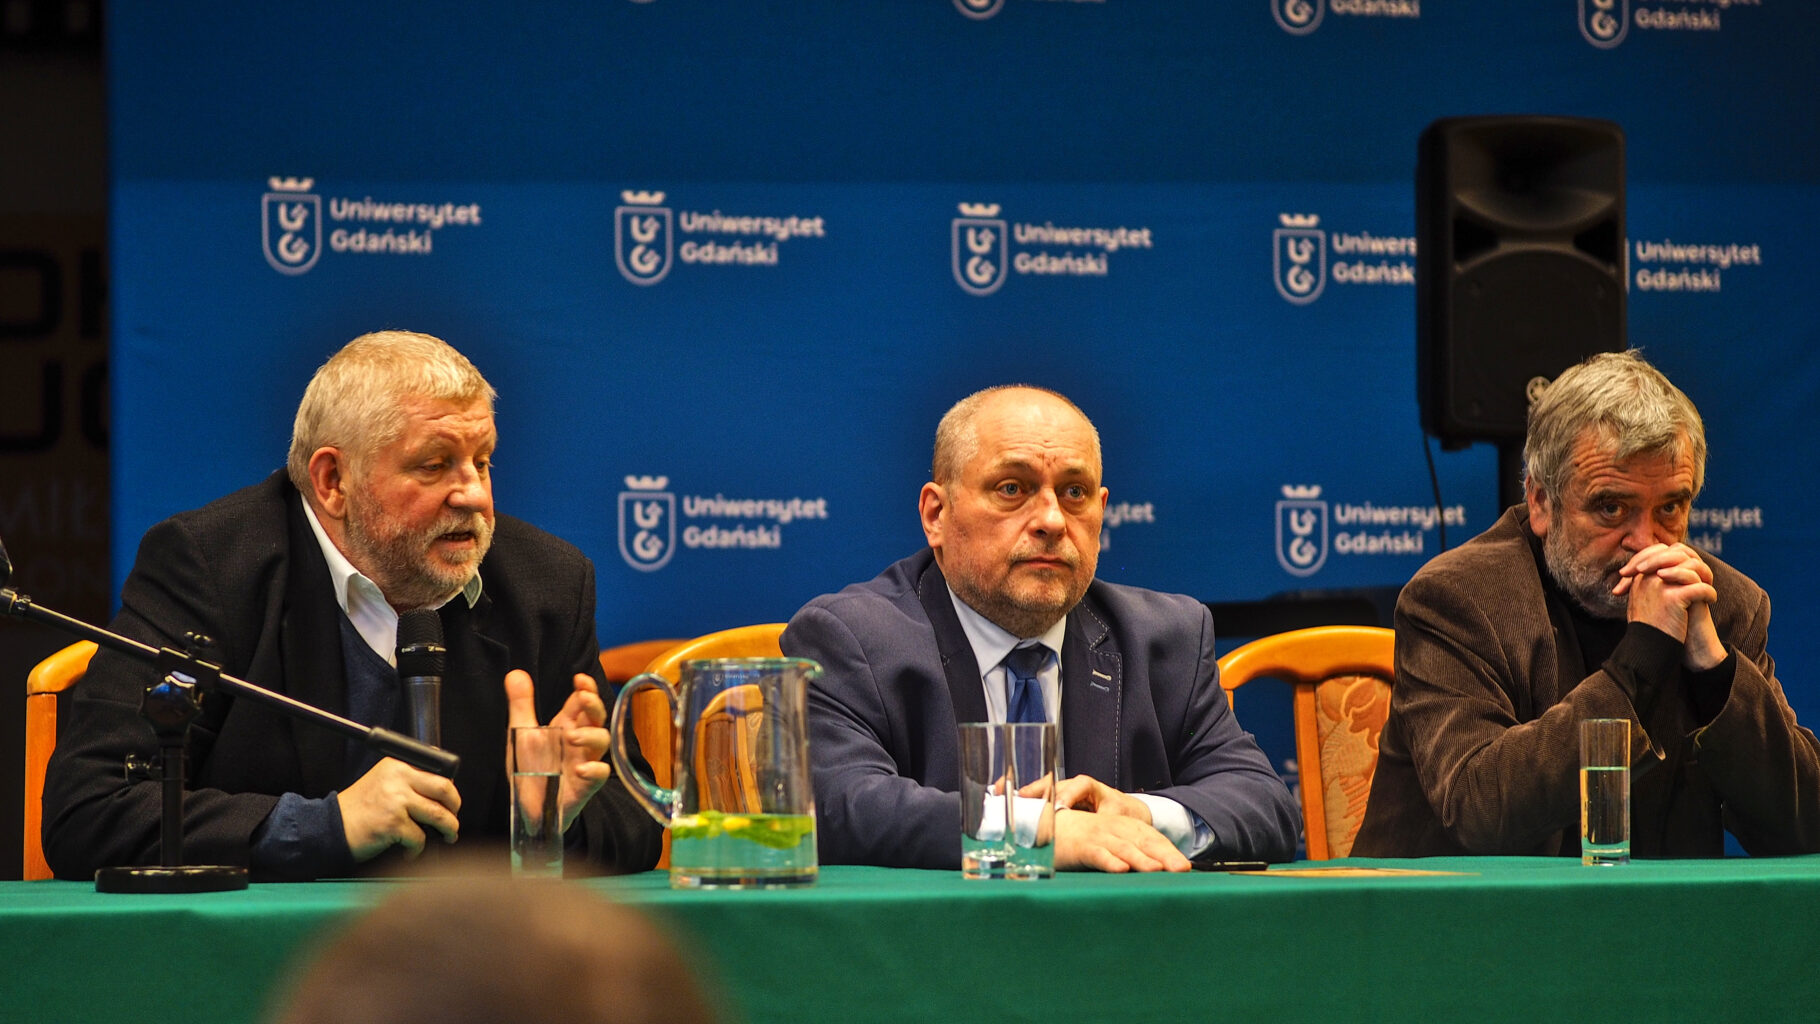 Od lewej: Marek Zająkała, Jarosław Słoma, 
dr hab. Dariusz Filar, prof. UG
(Fot. Marcel Jakubowski (Zespół Prasowy UG)).